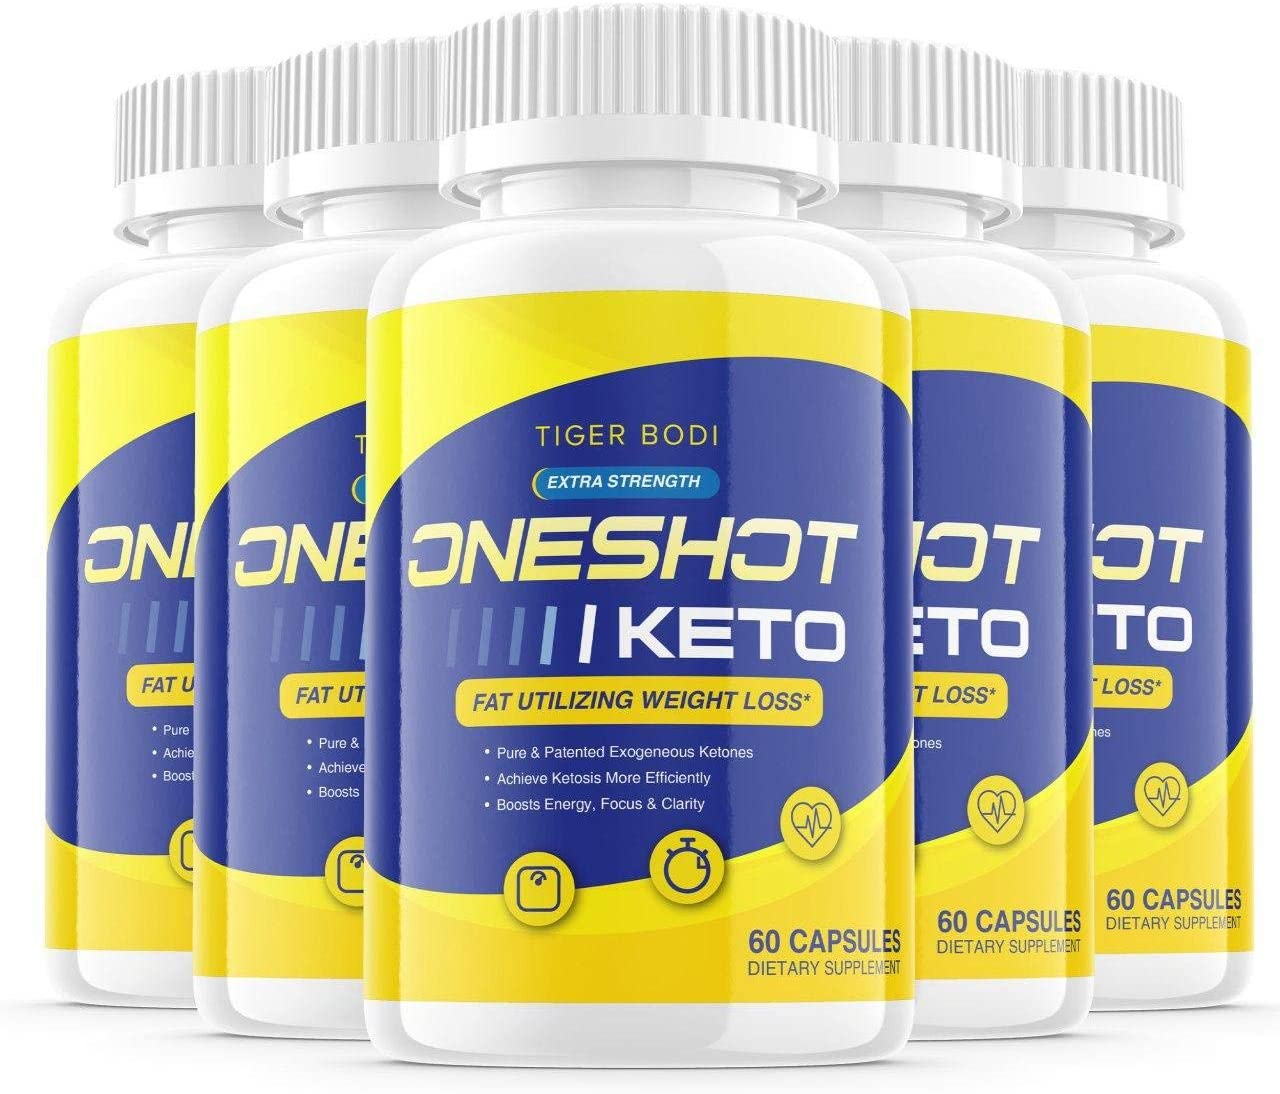 One Shot Keto Pro Ingredients Label